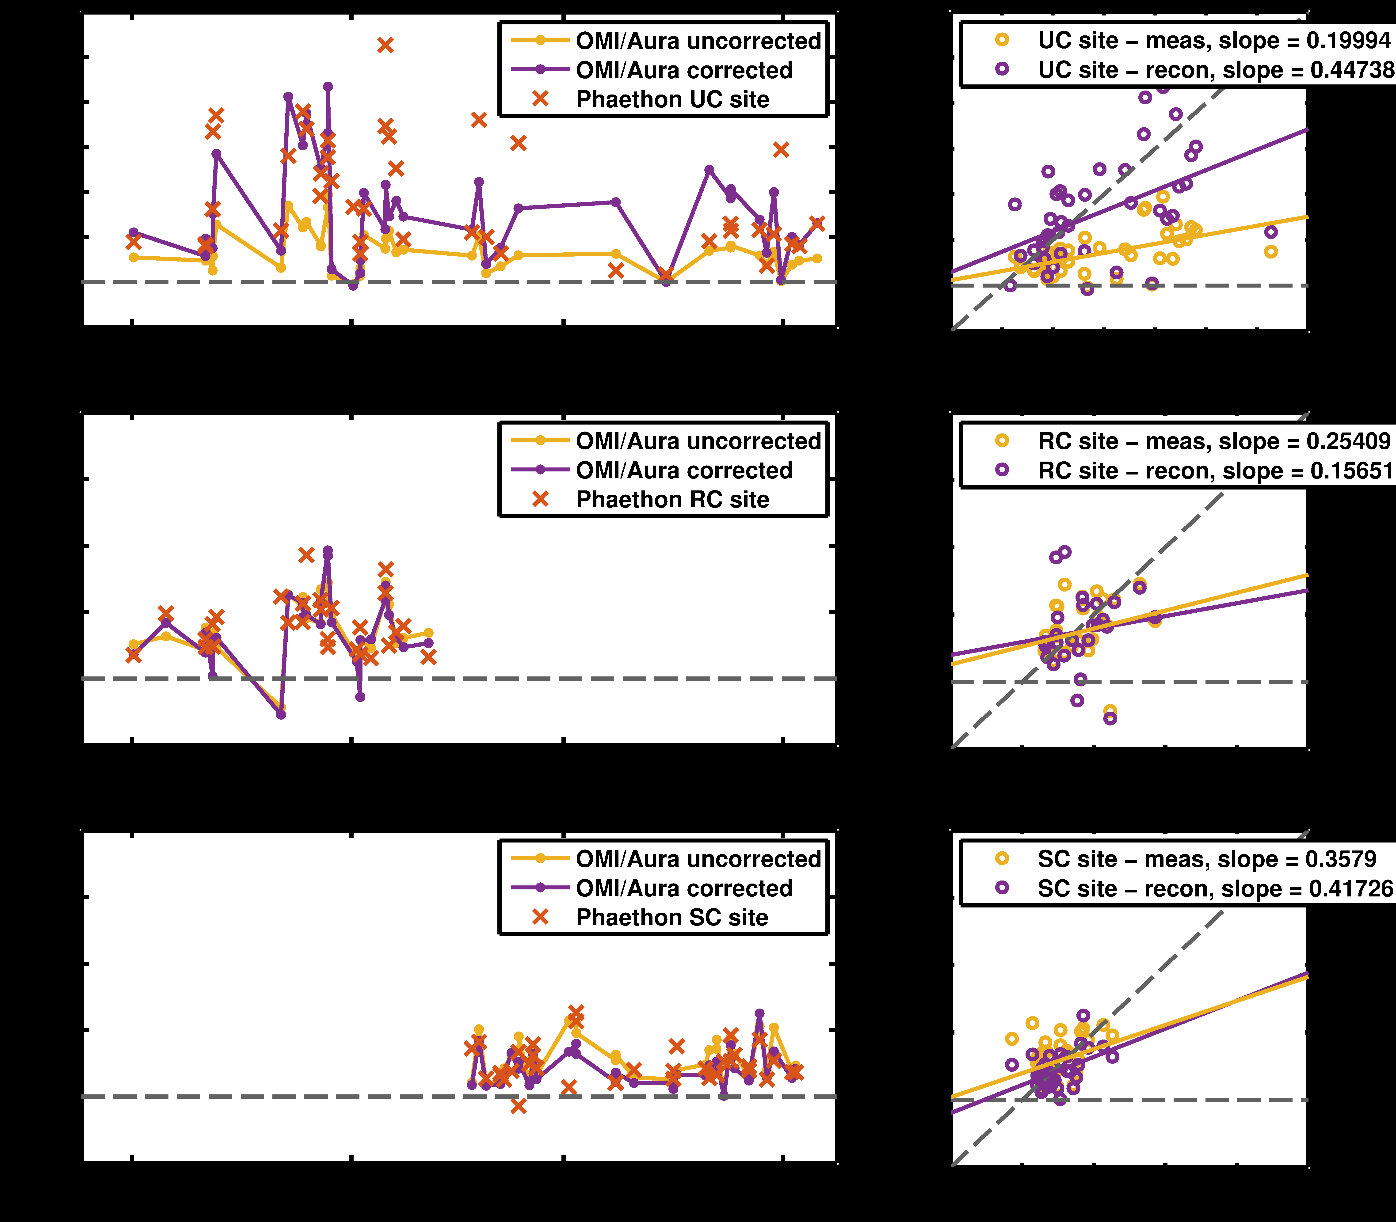 CAMx. Η σύγκριση επίγειων και δορυφορικών μετρήσεων στο ΑΠΘ (UC) βελτιώνεται σημαντικά, με την κλίση της ευθείας στο διάγραμμα διασποράς να παίρνει την τιμή ~0.45 από ~0.